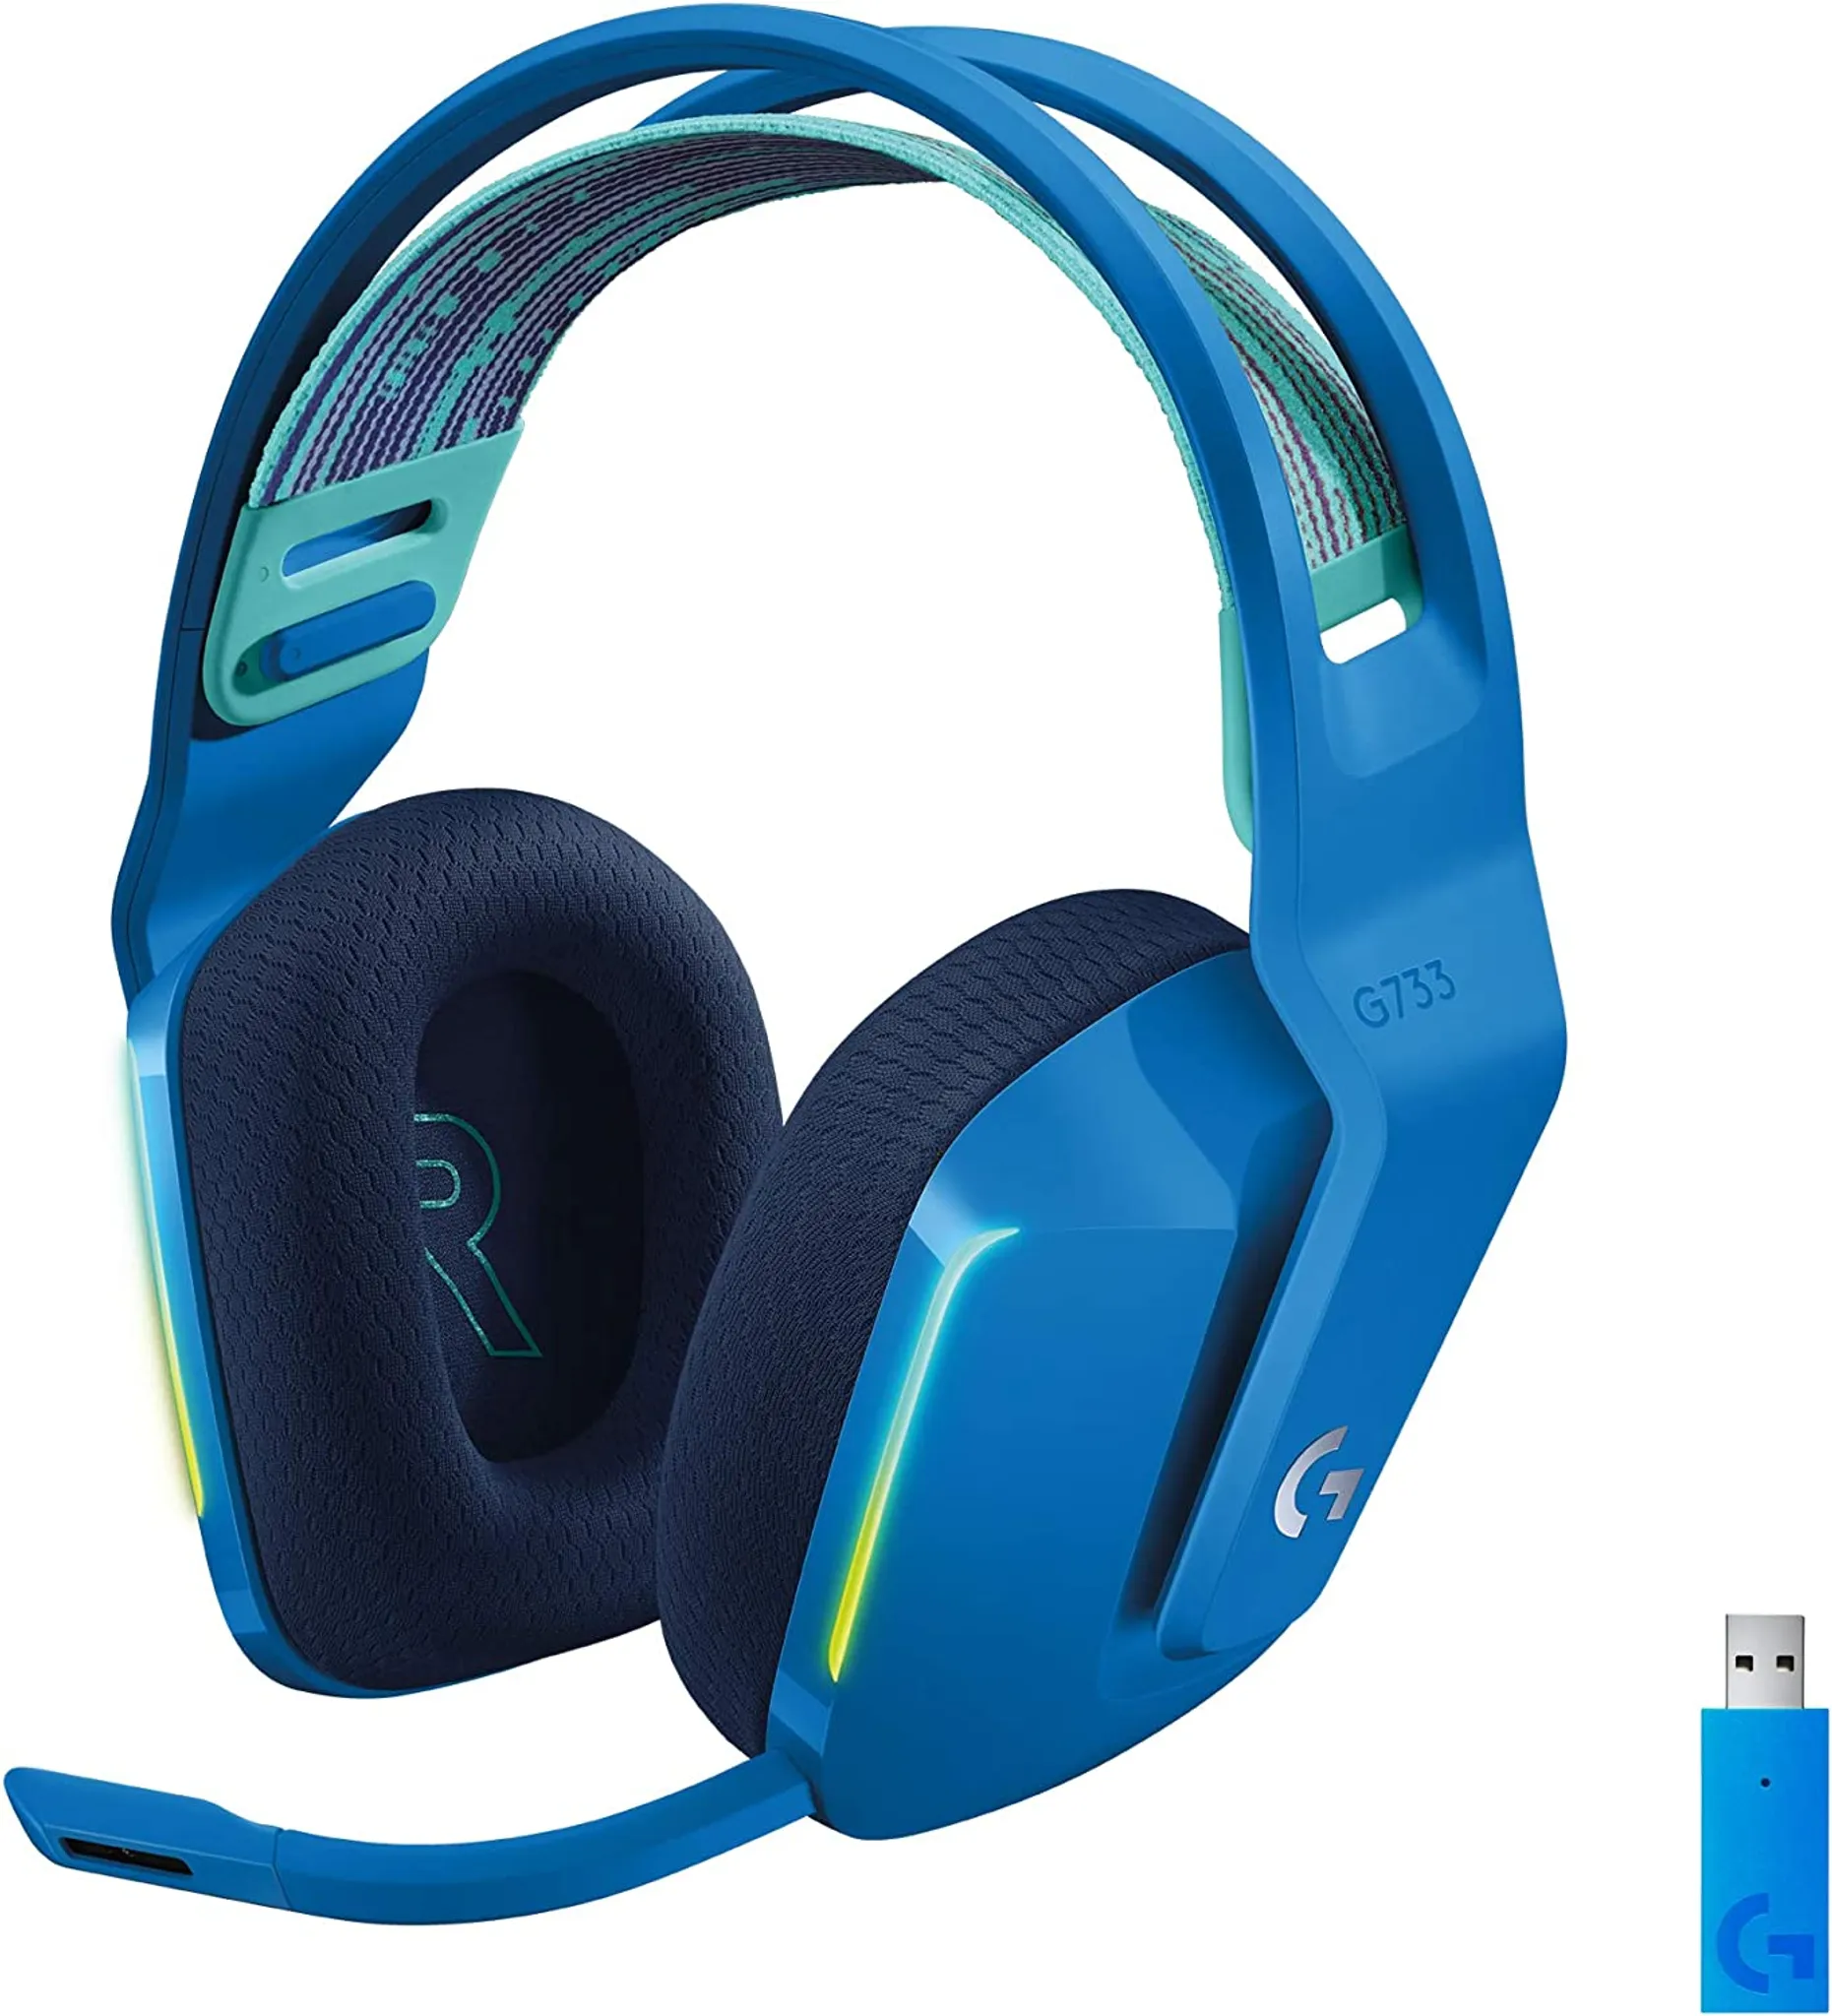 blau Lightspeed G Headset G733 Logitech